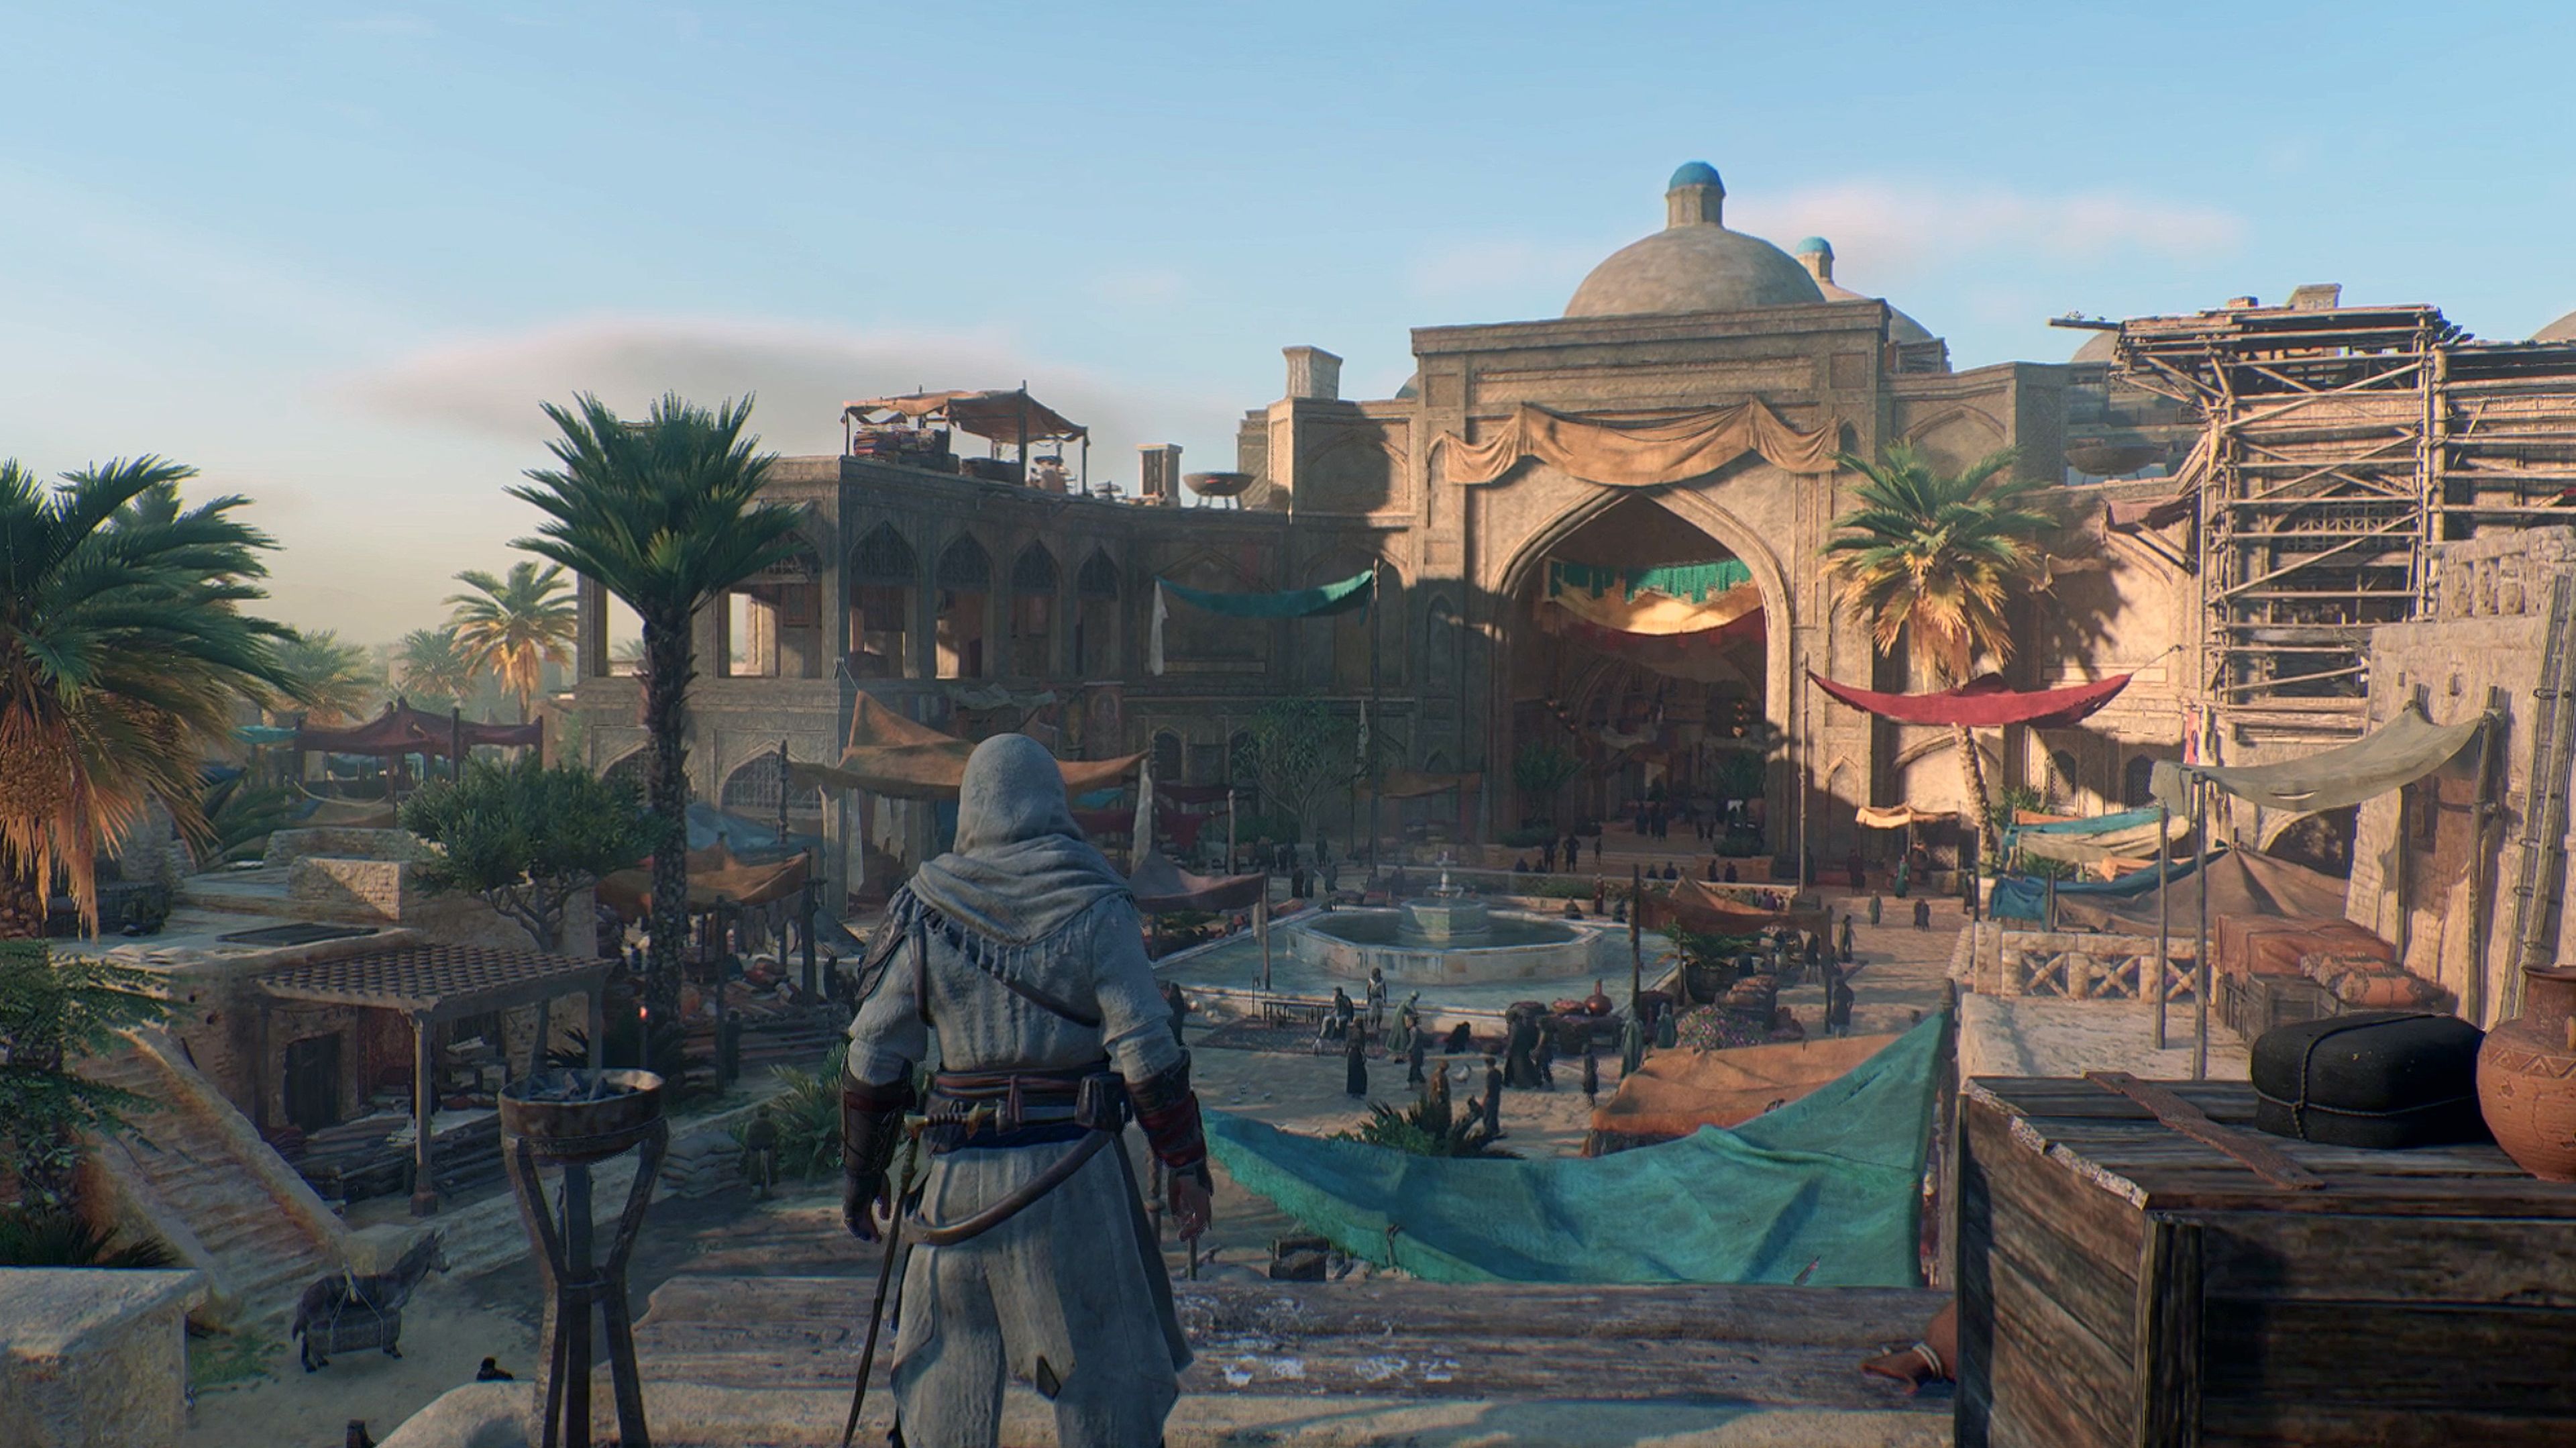 Assassin's Creed Mirage' y su regreso a los orígenes arranca la